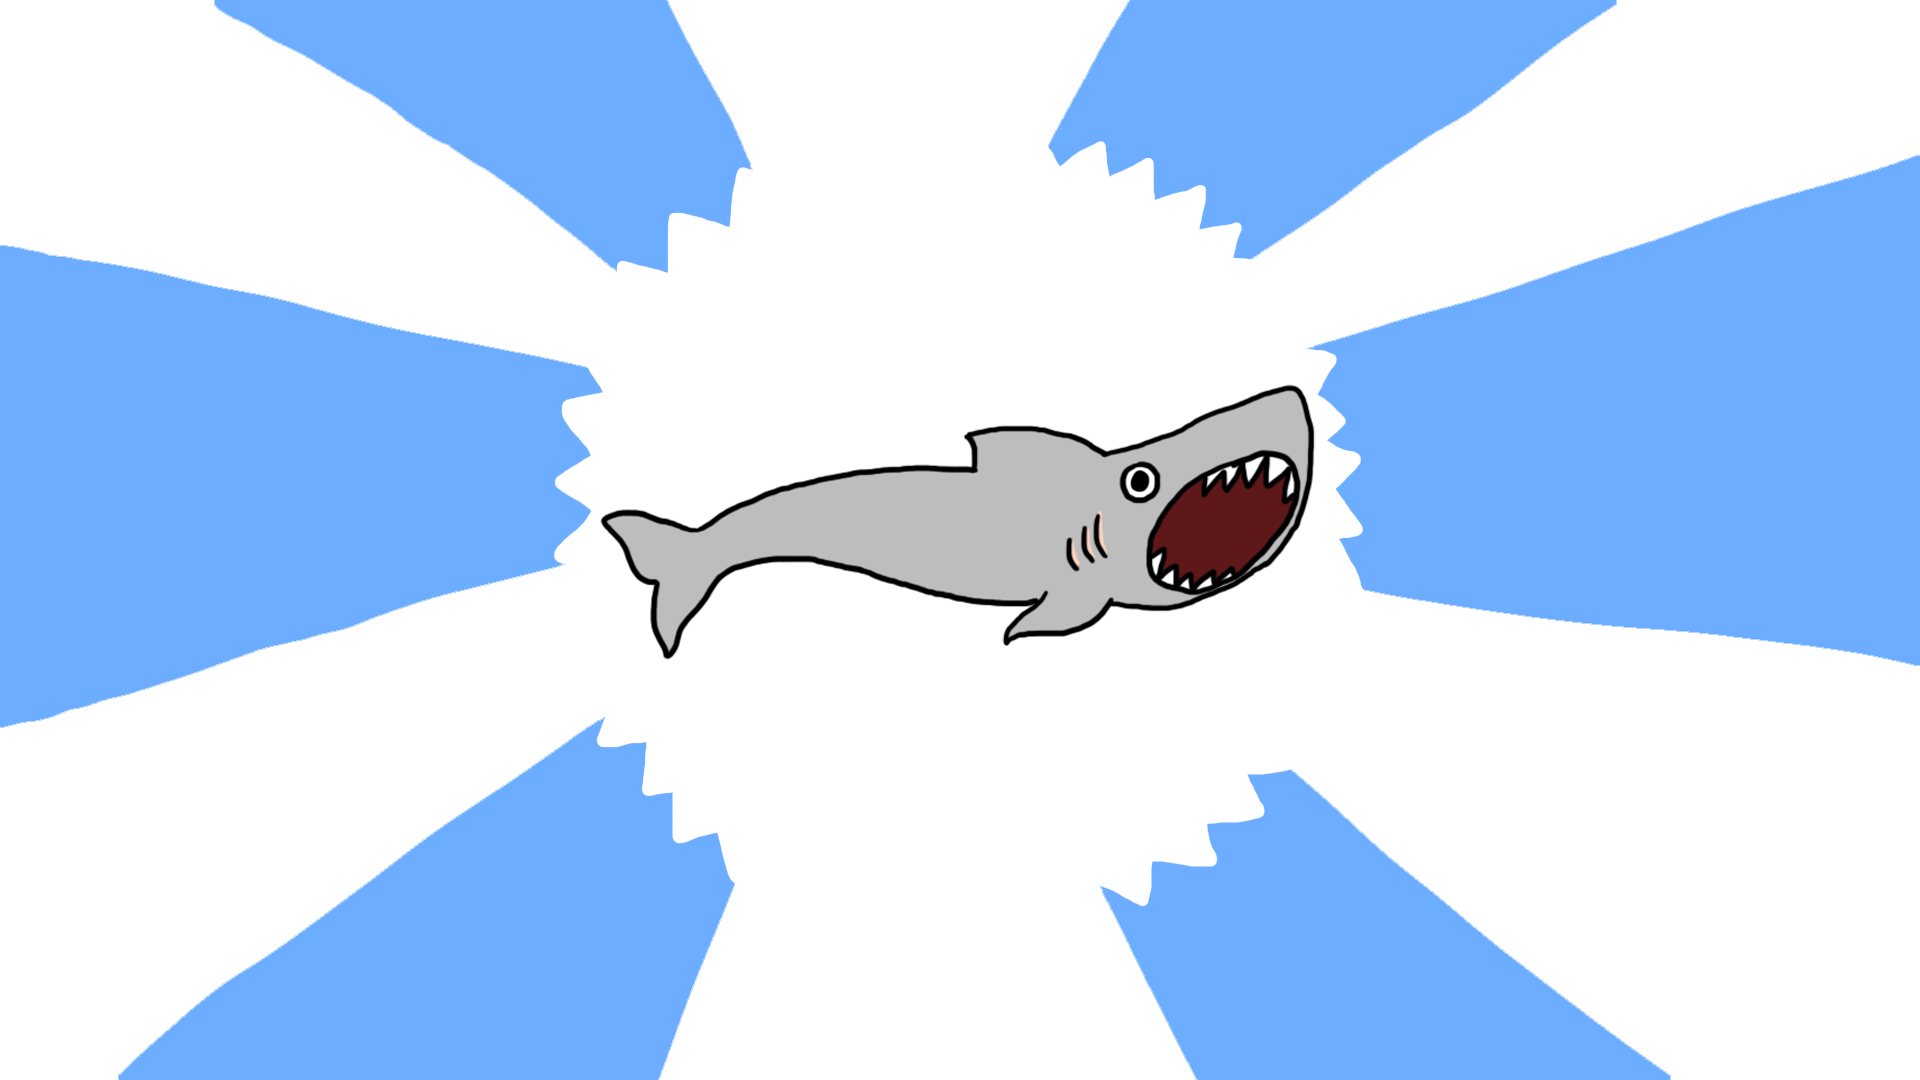 Quick Draw - A Shark